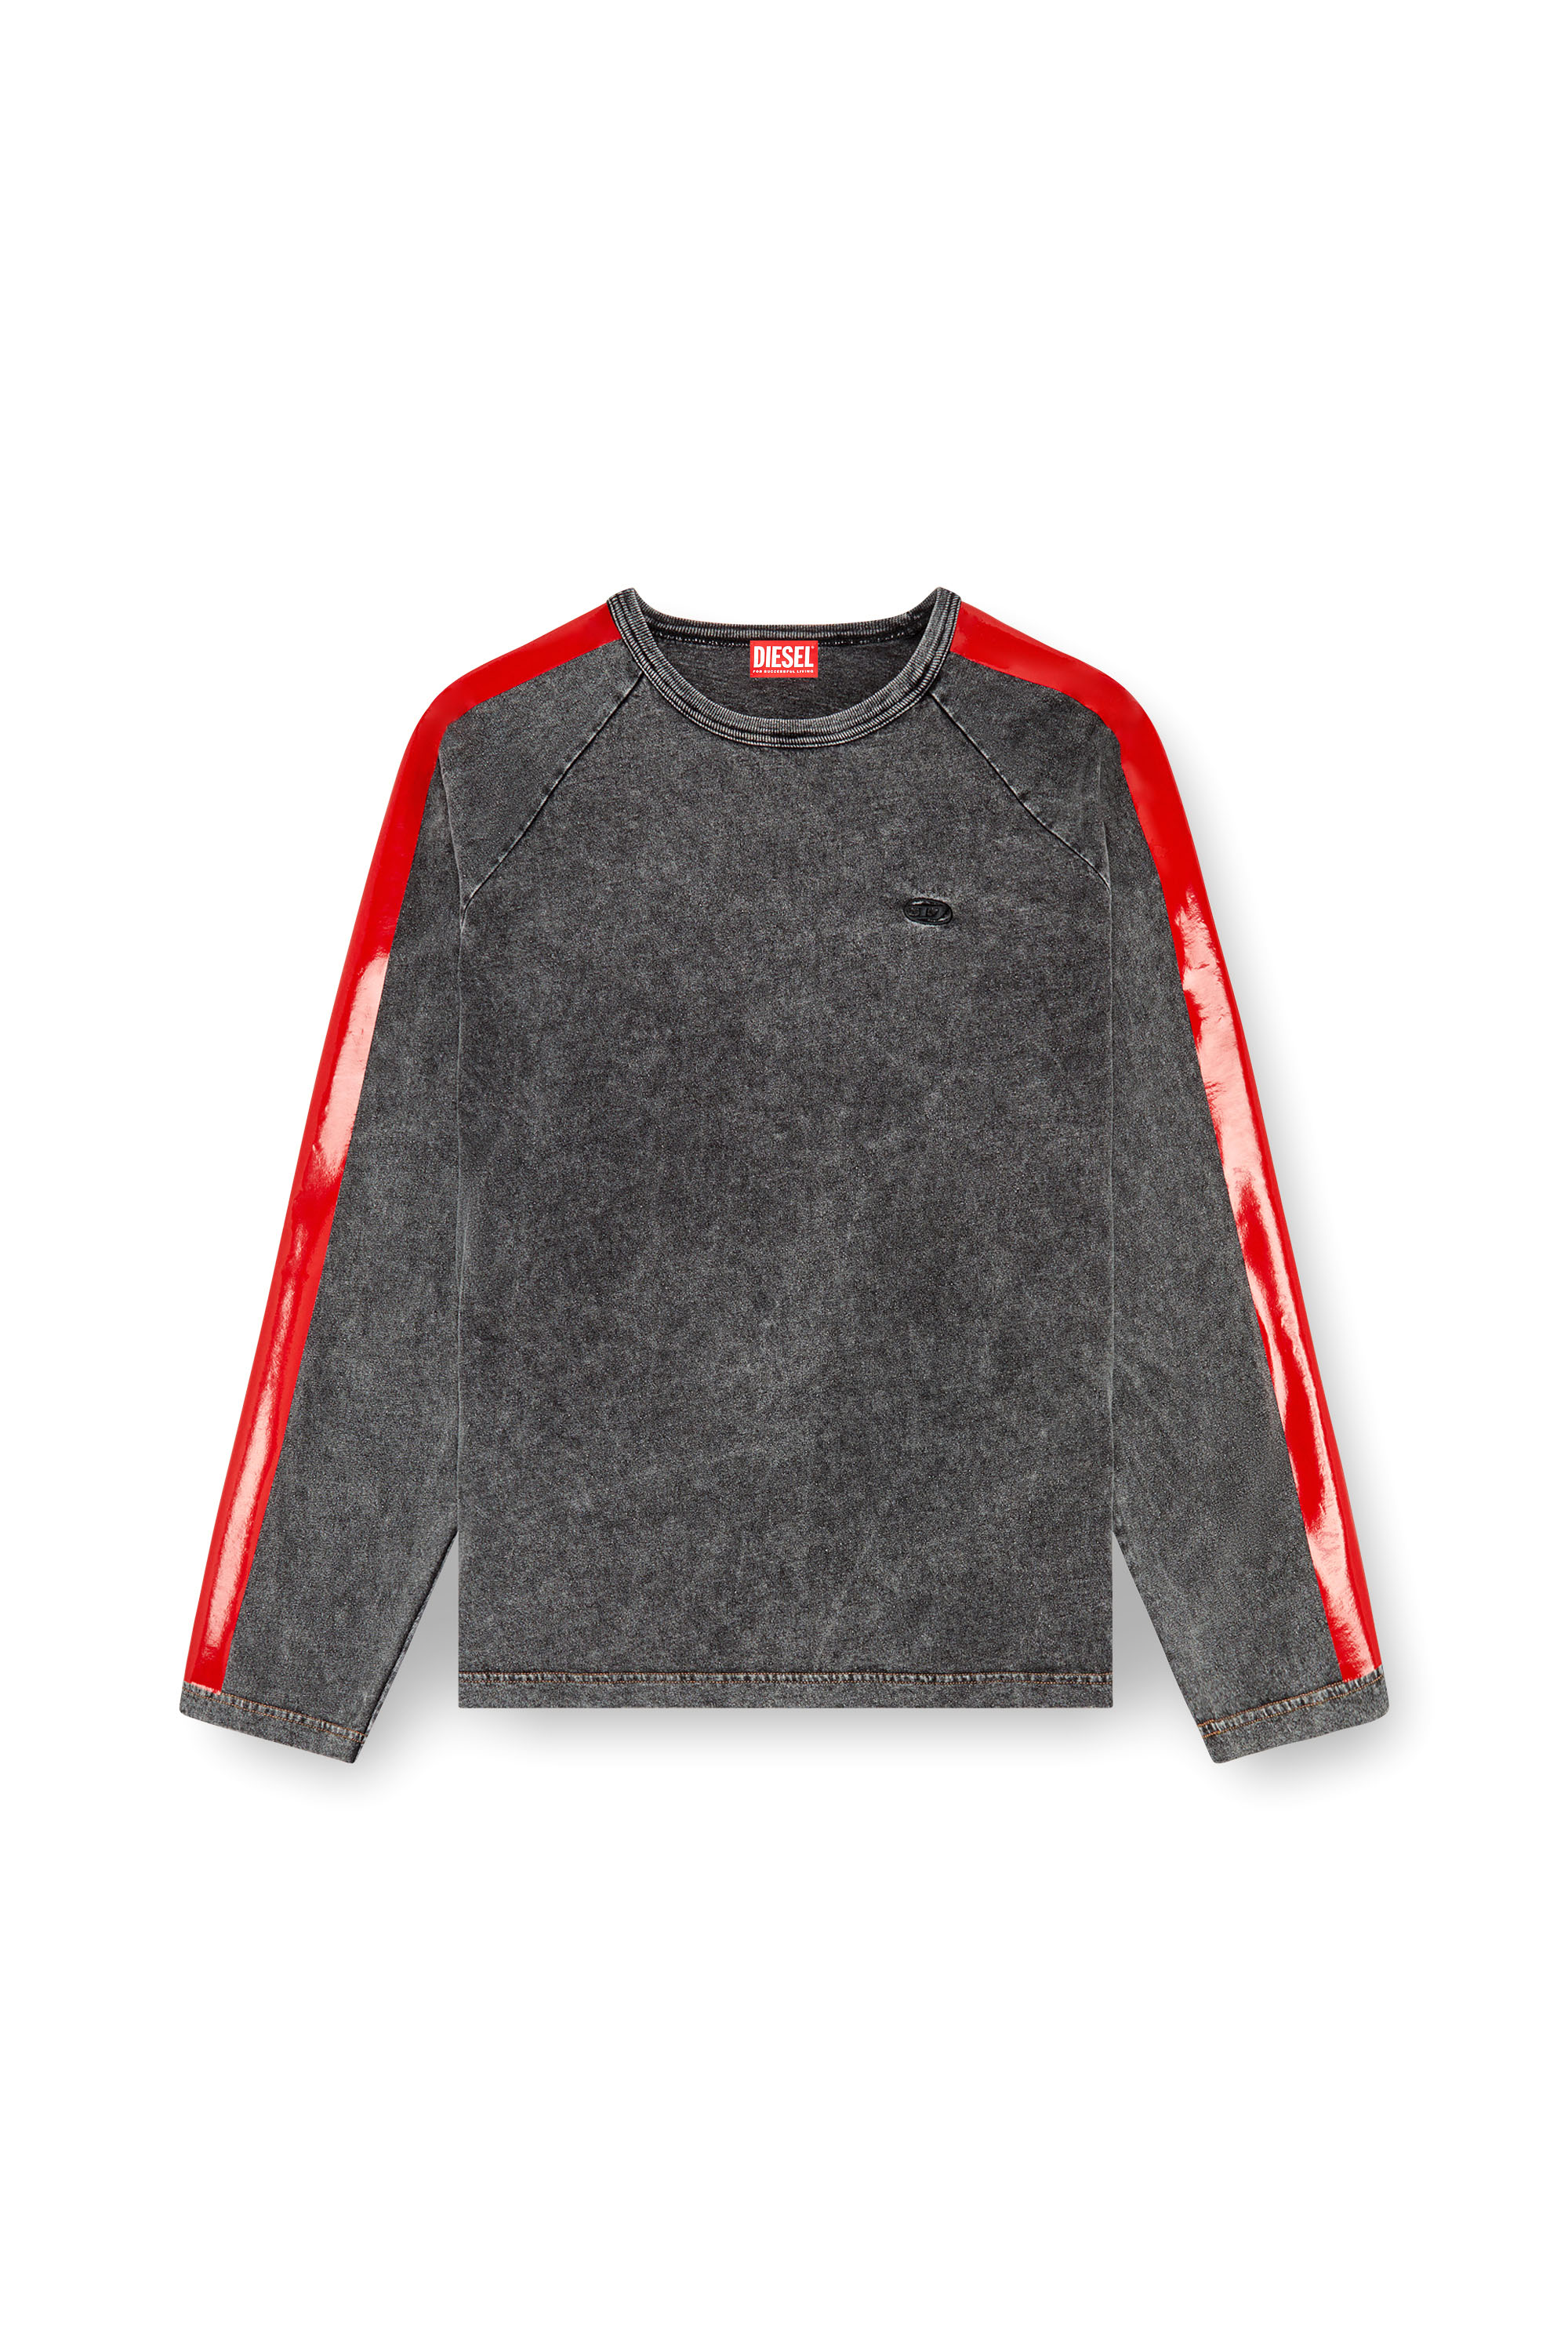 Diesel - T-REDROXT, Homme T-shirt à manches longues avec bandes brillantes in Noir - Image 3